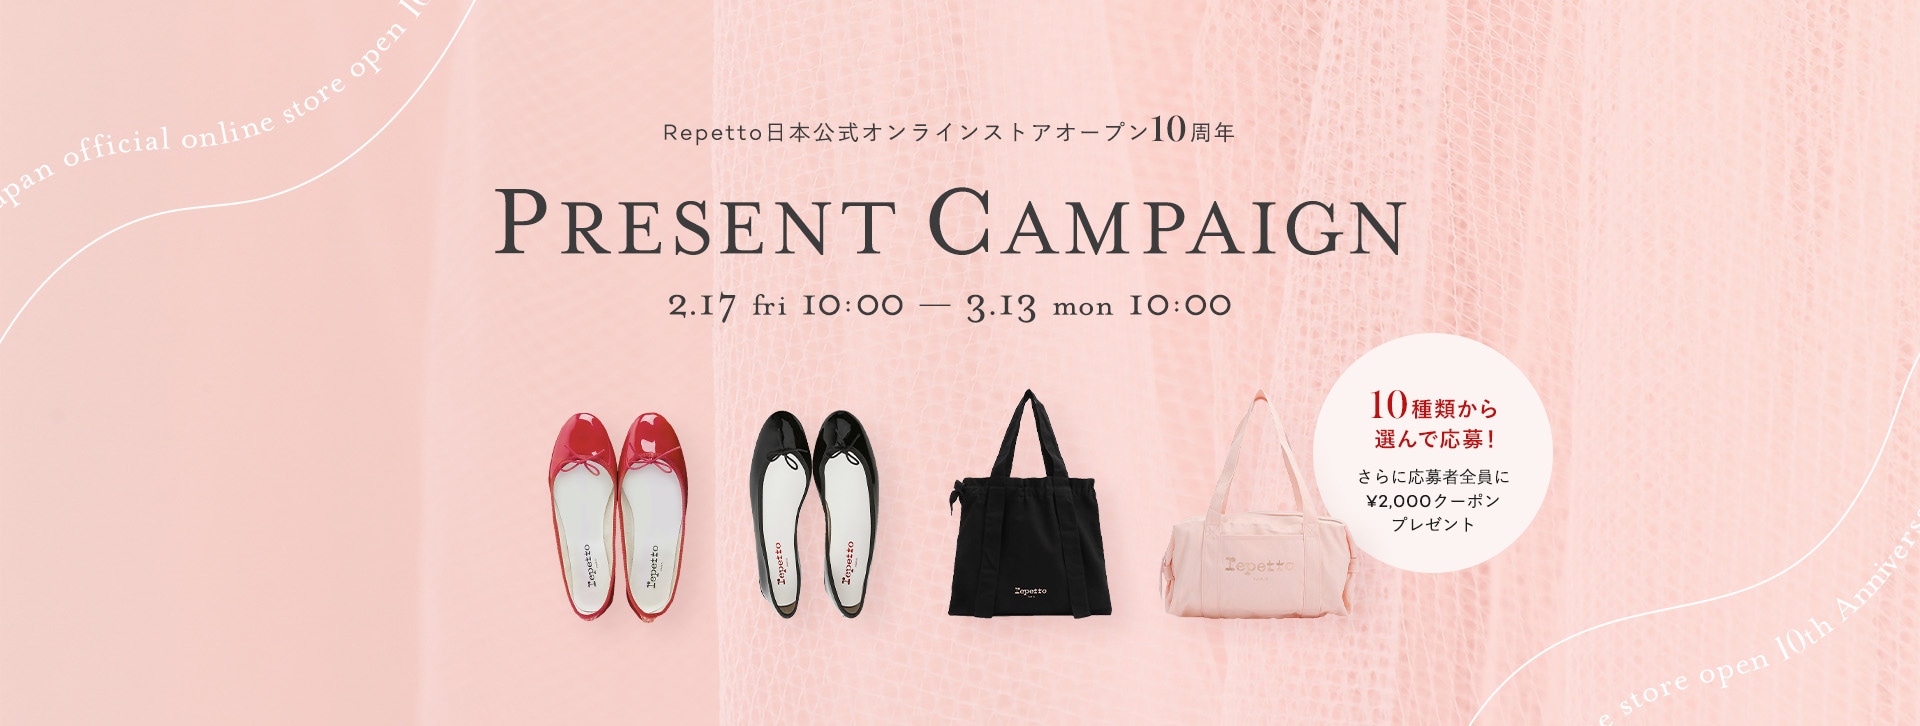 Repetto日本公式オンラインストアオープン10周年 PRESENT CAMPAIGN 2.17 fri 10:00 ~ 3.13 mon 10:00